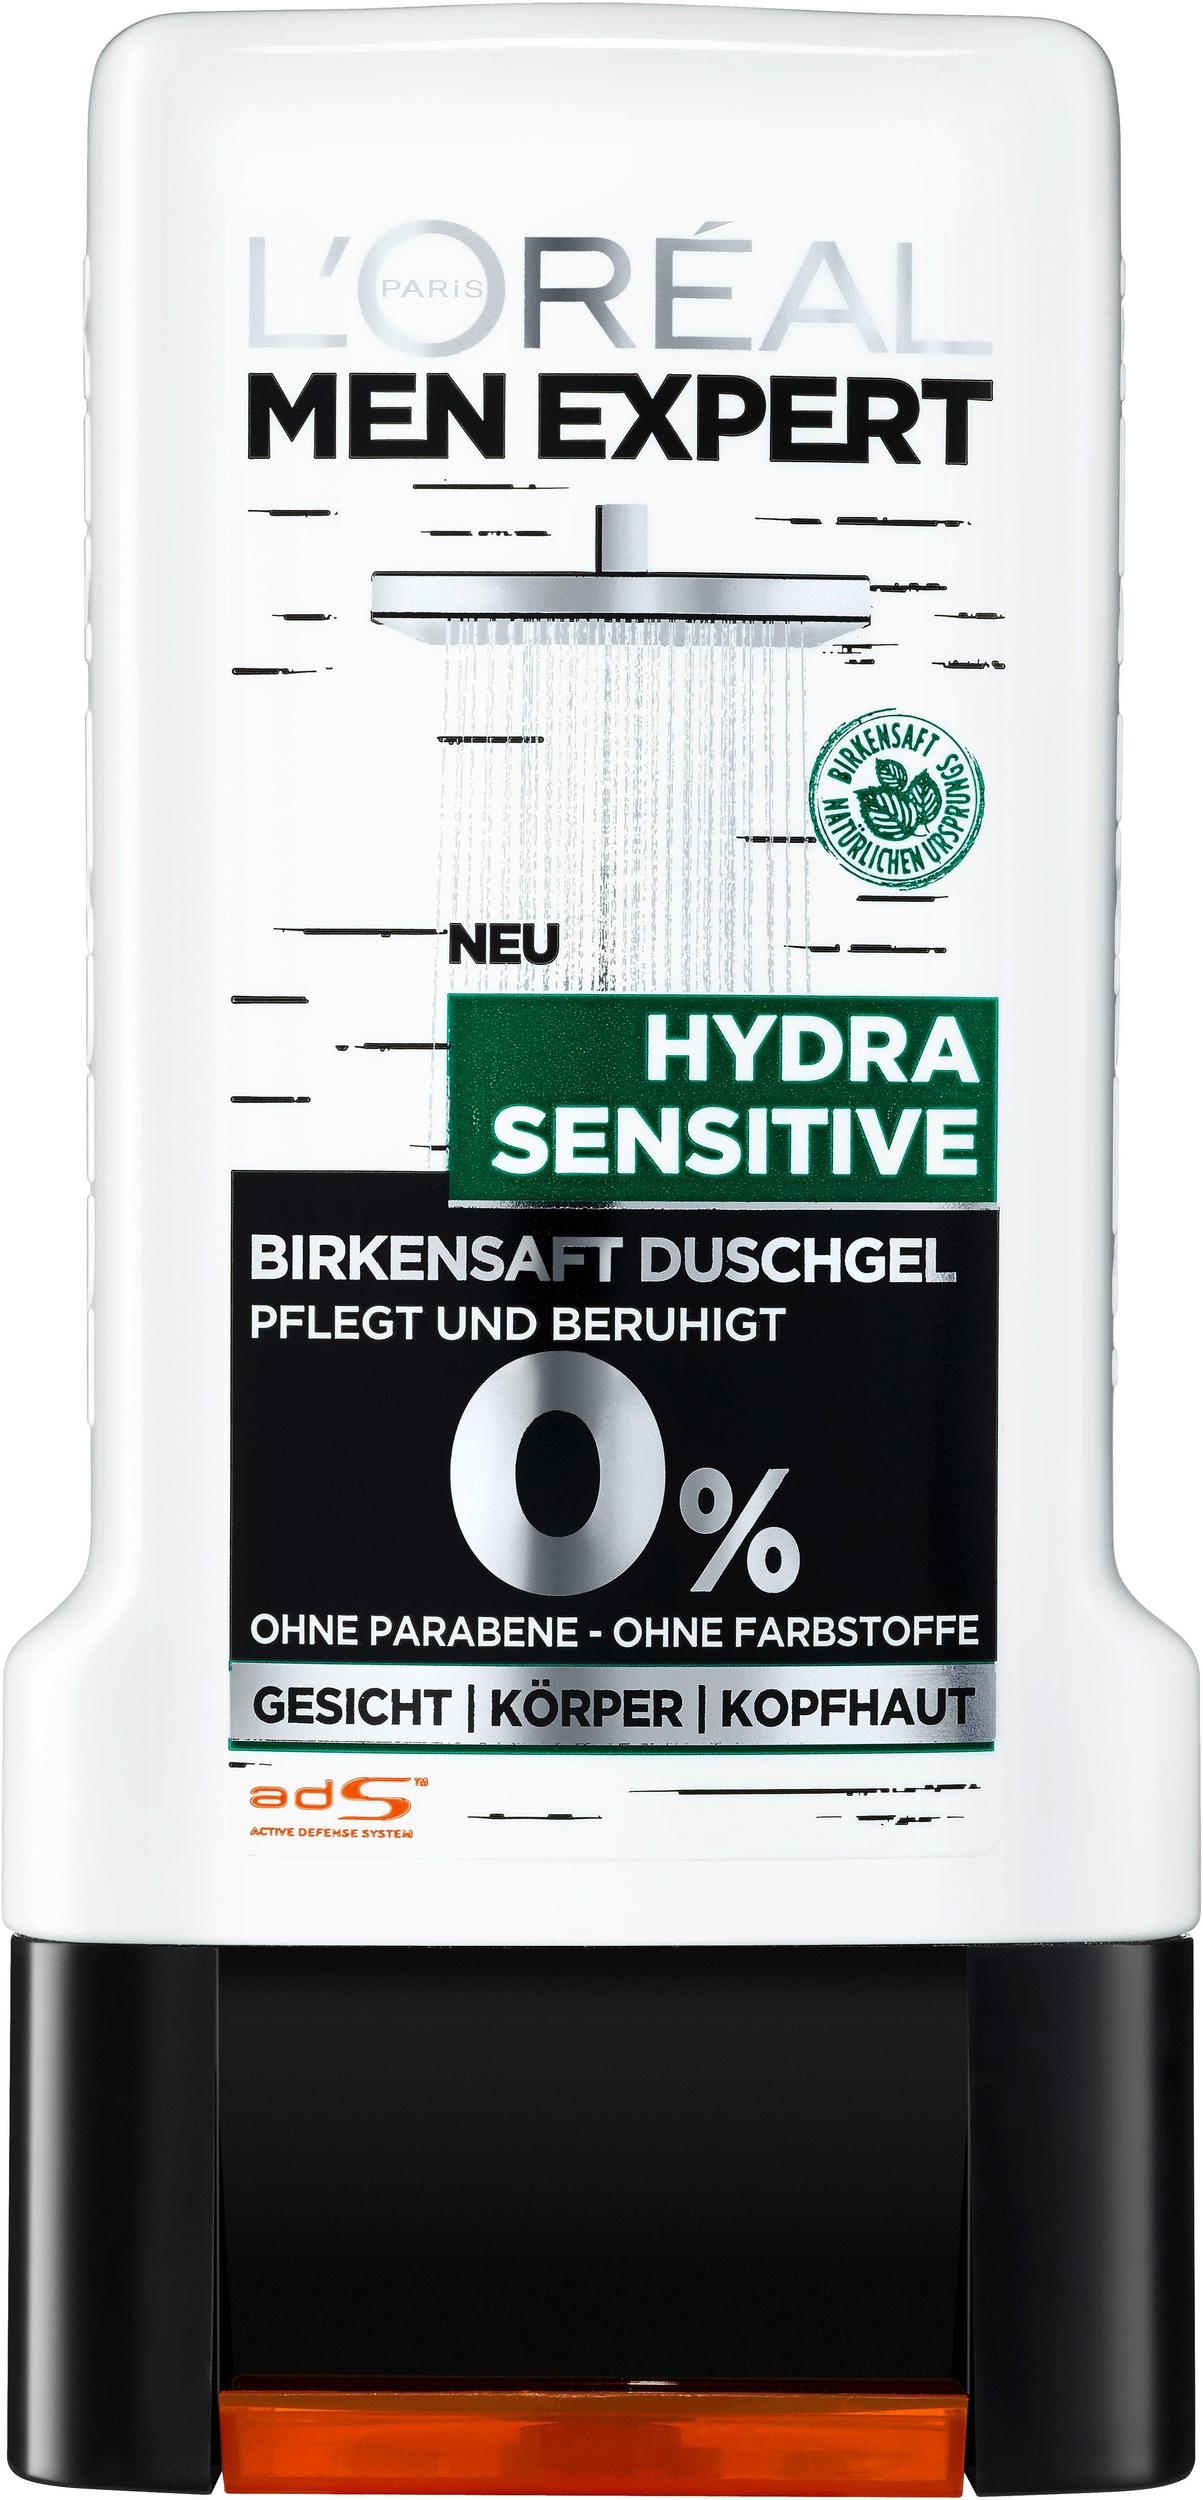 L'Oréal Men Expert Hydra Sensitive Birkensaft Duschgel (300ml) Test ❤️  Jetzt ab 2,34 € (April 2022) Testbericht.de